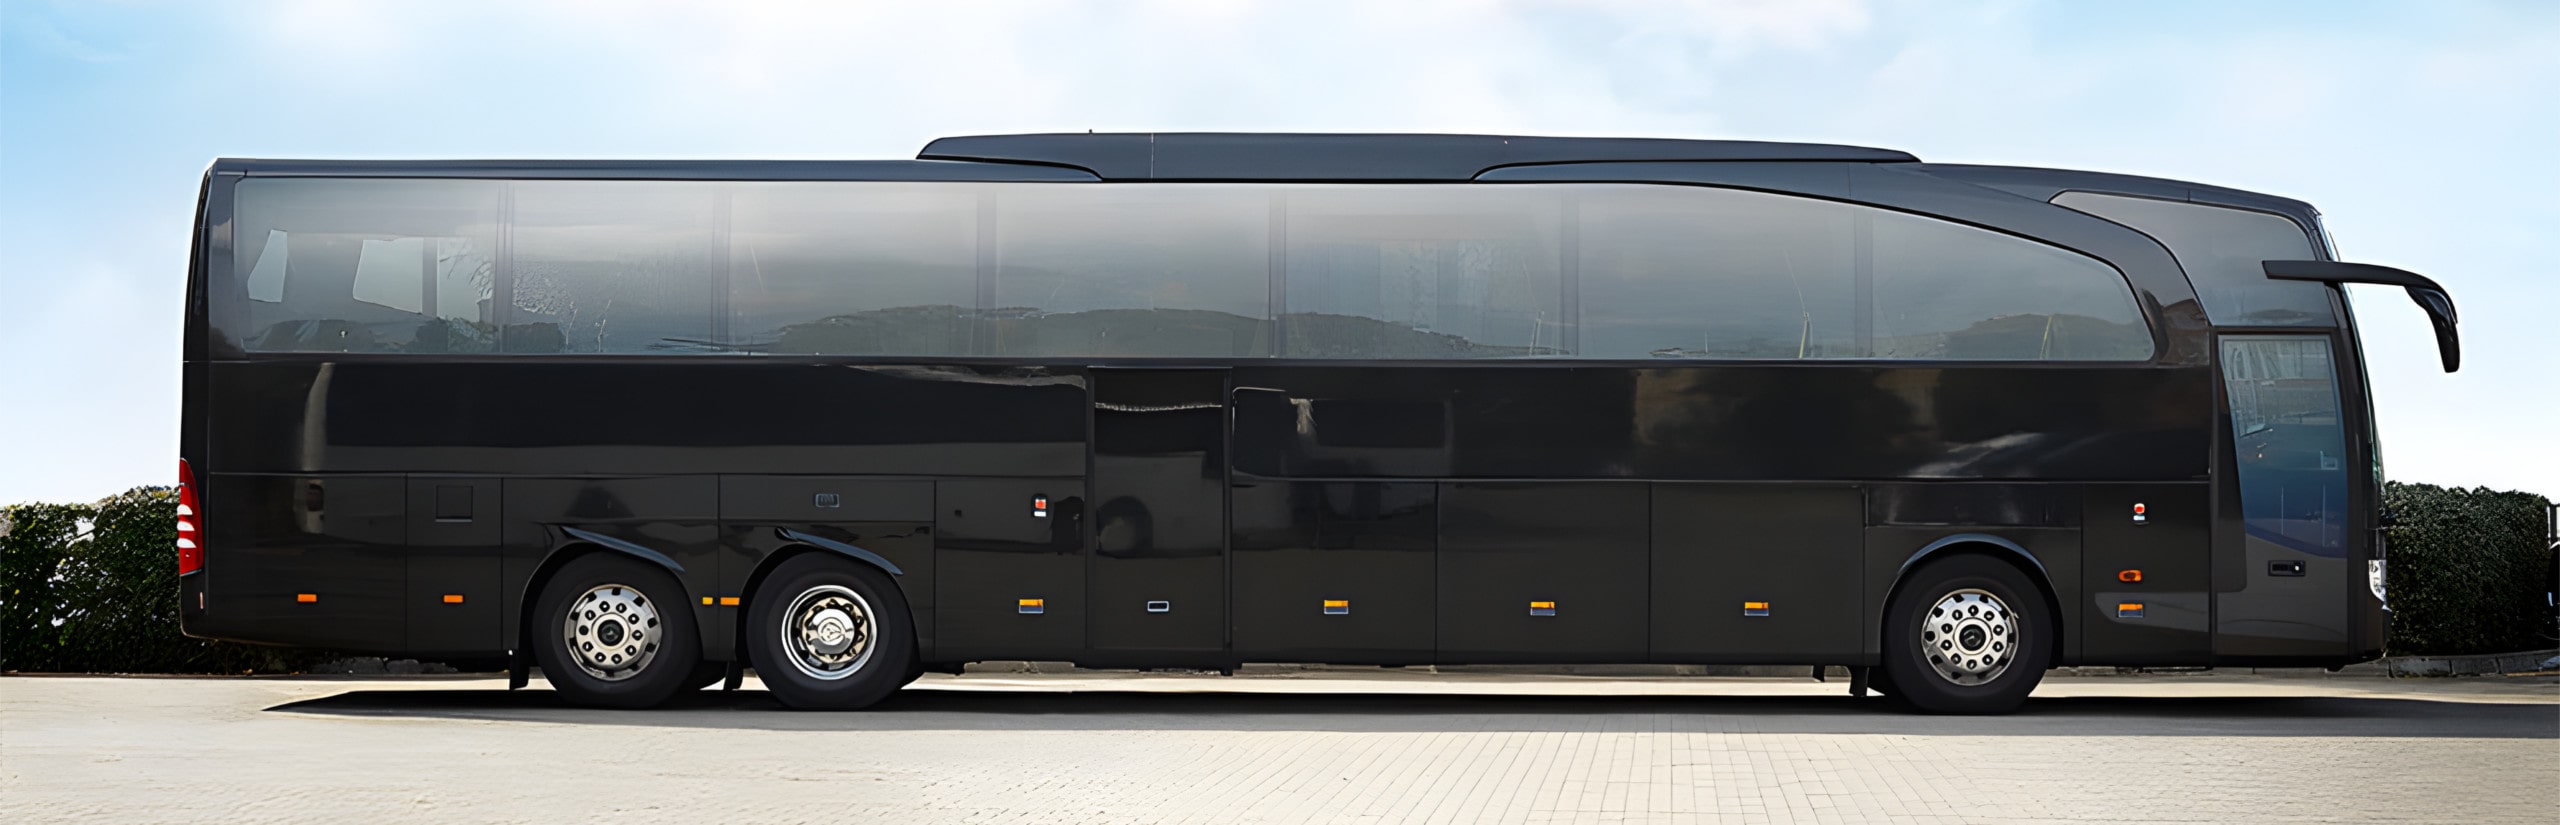 VIP Bus – Luxus Bus – VIP Liner – Konferenz Bus mieten in Berlin & Potsdam